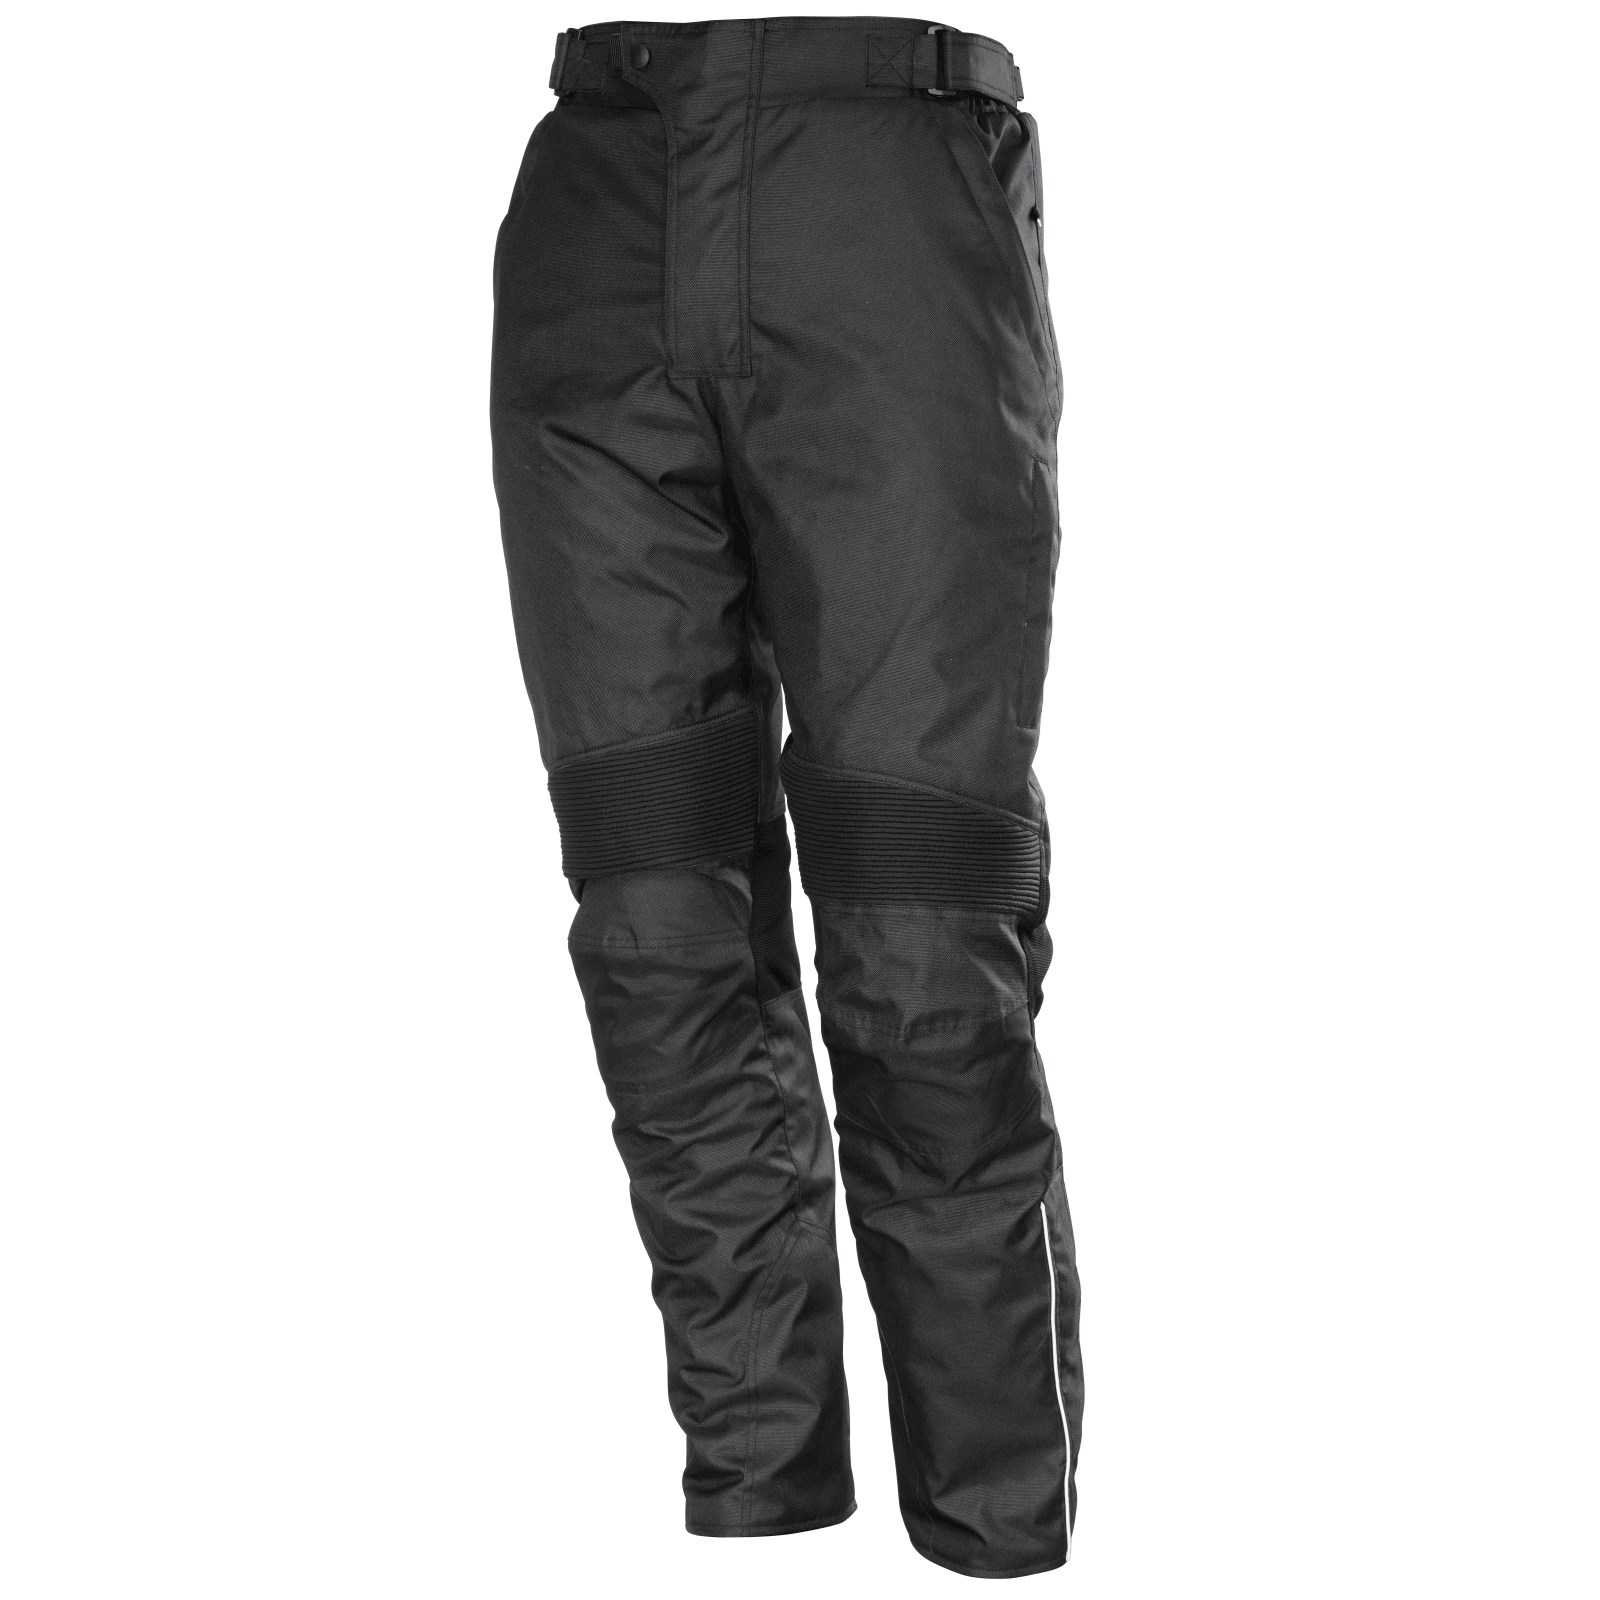 Pantalon de moto Vengo Acheter - Vêtements pour scooter - LANDI